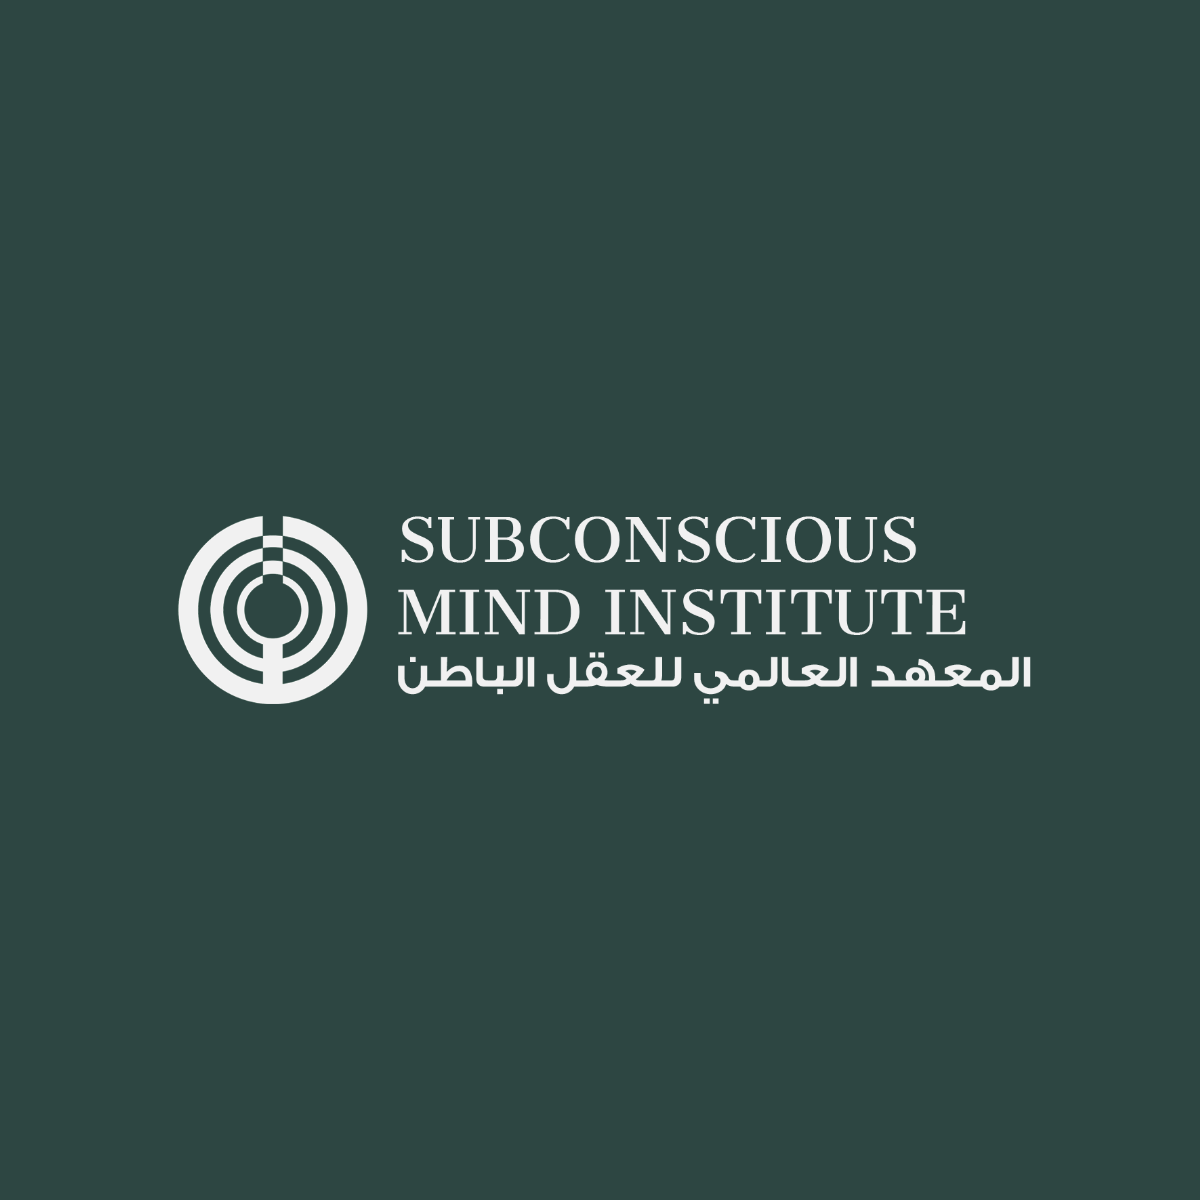 Subconscious mind institute logo